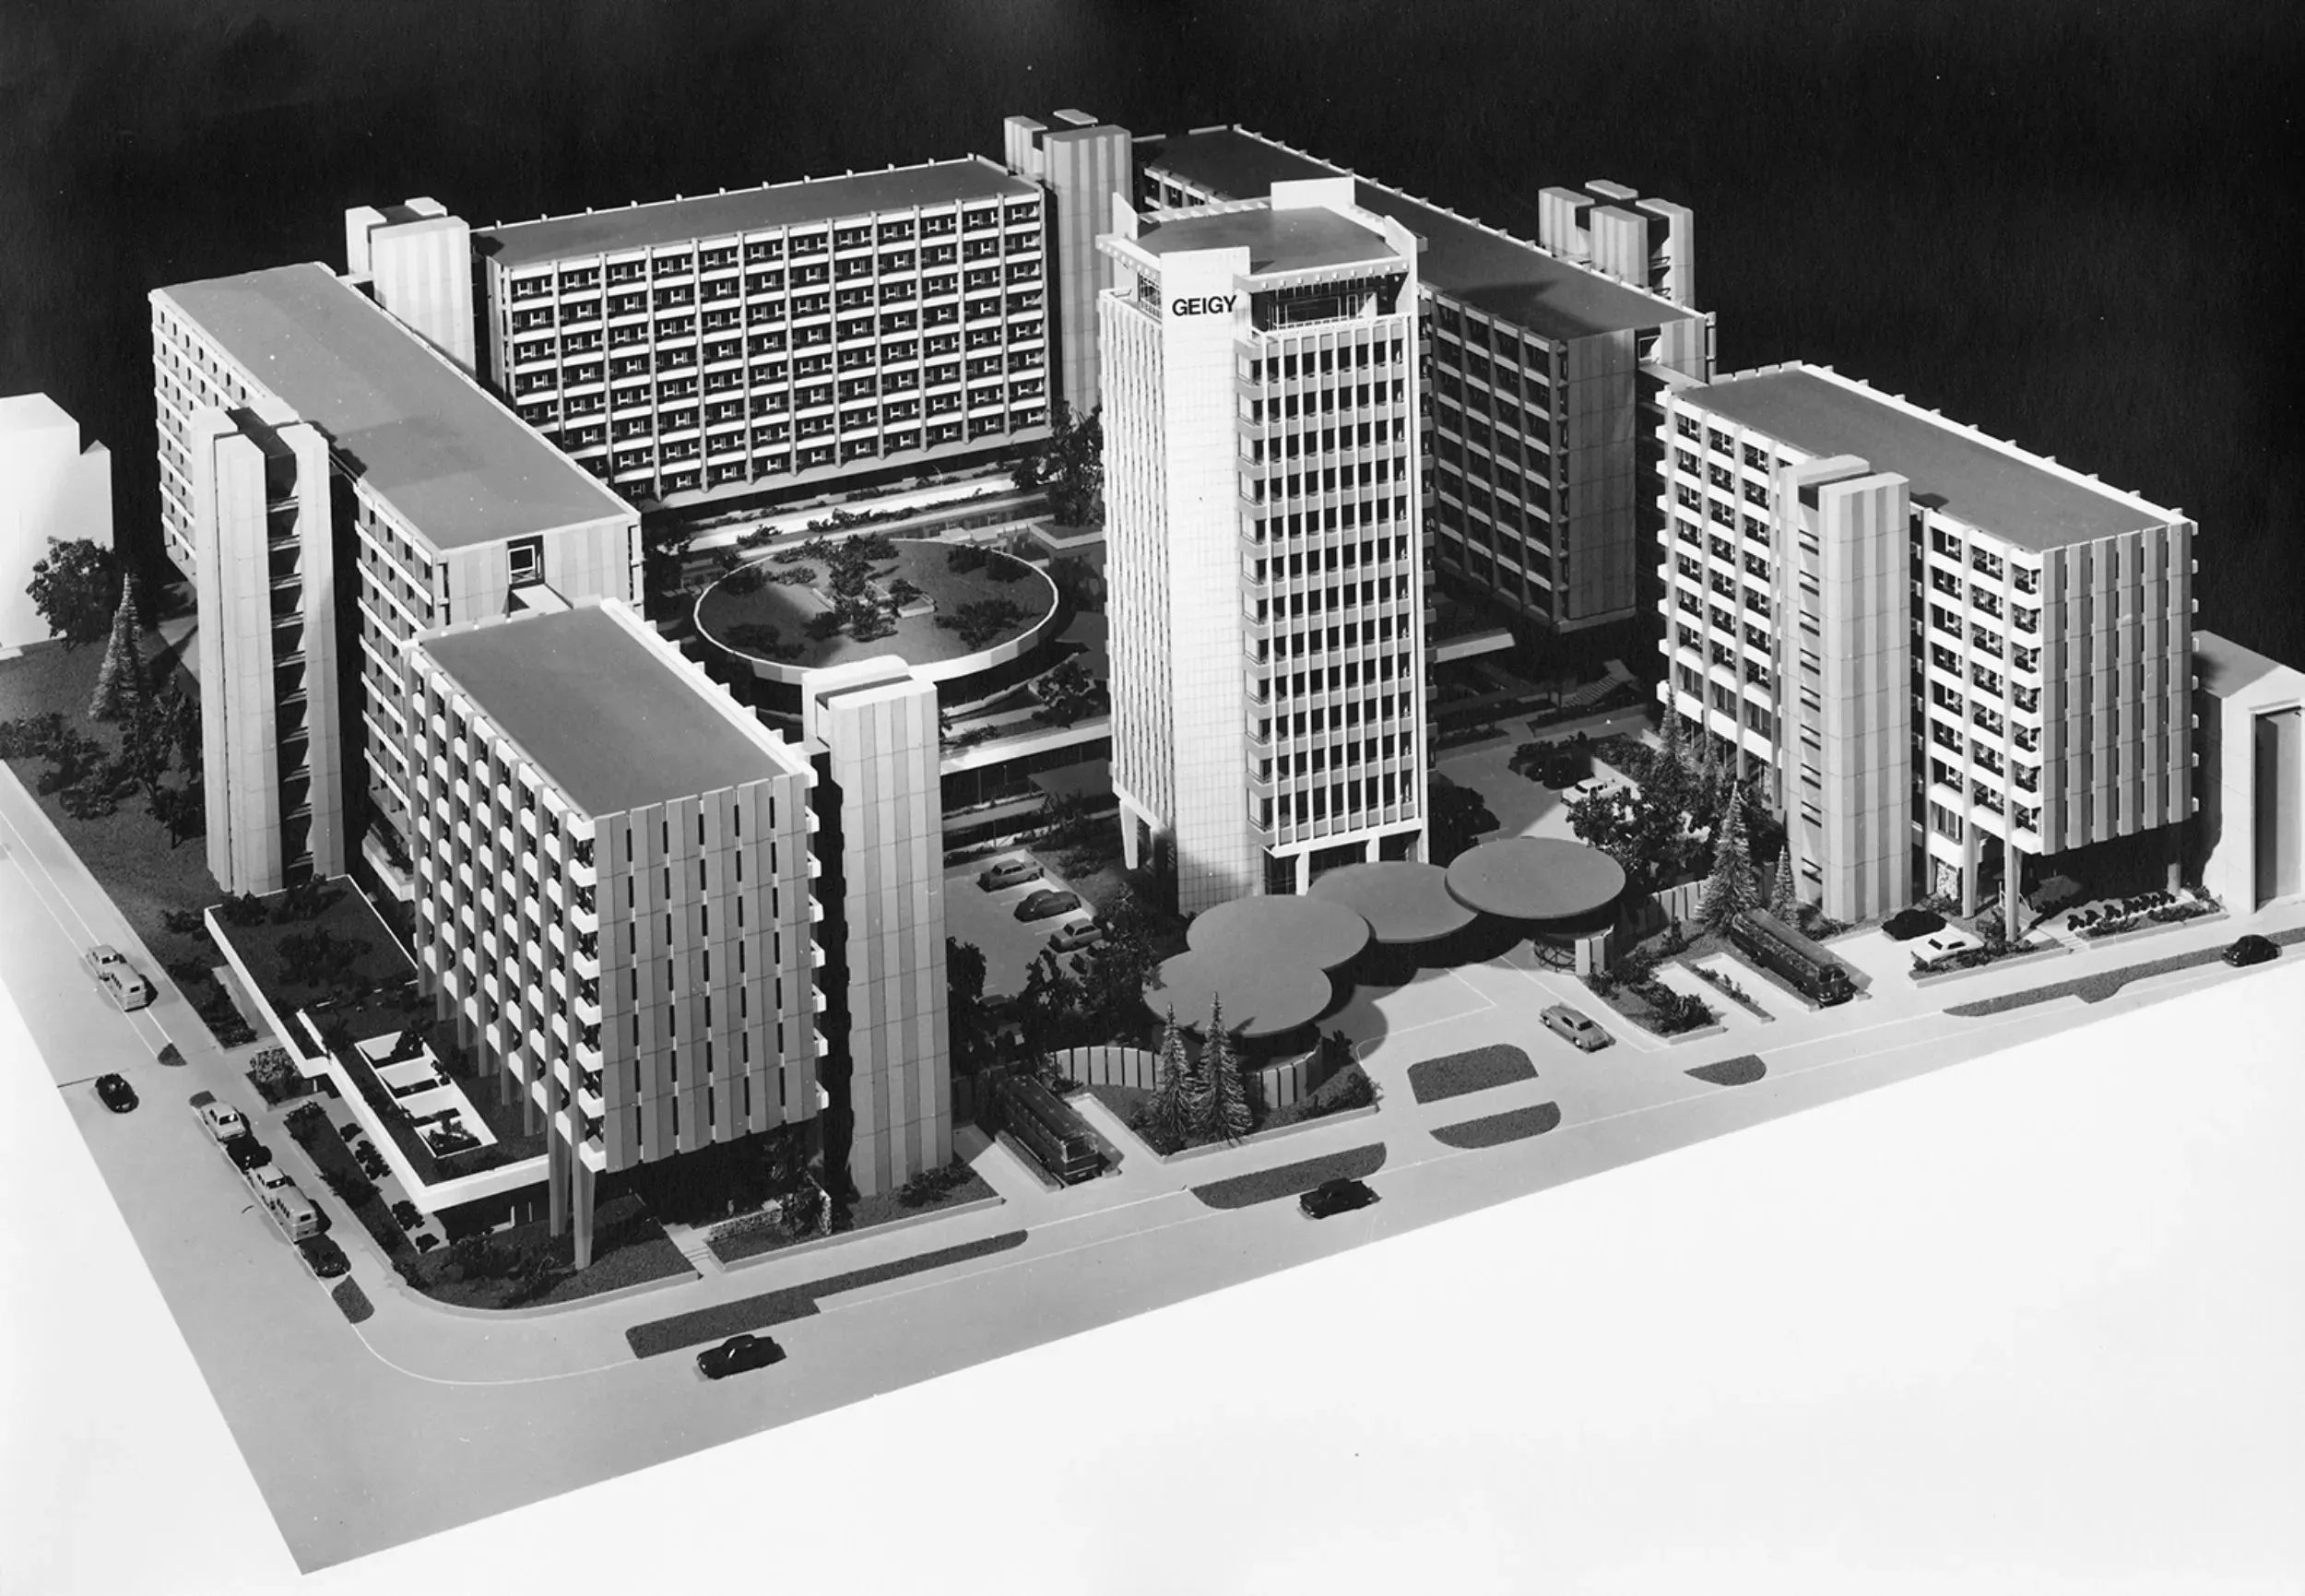 Der 1968 vorgelegte Modellentwurf von Burckhardt Architekten zur Neugestaltung des Geigy-Areals